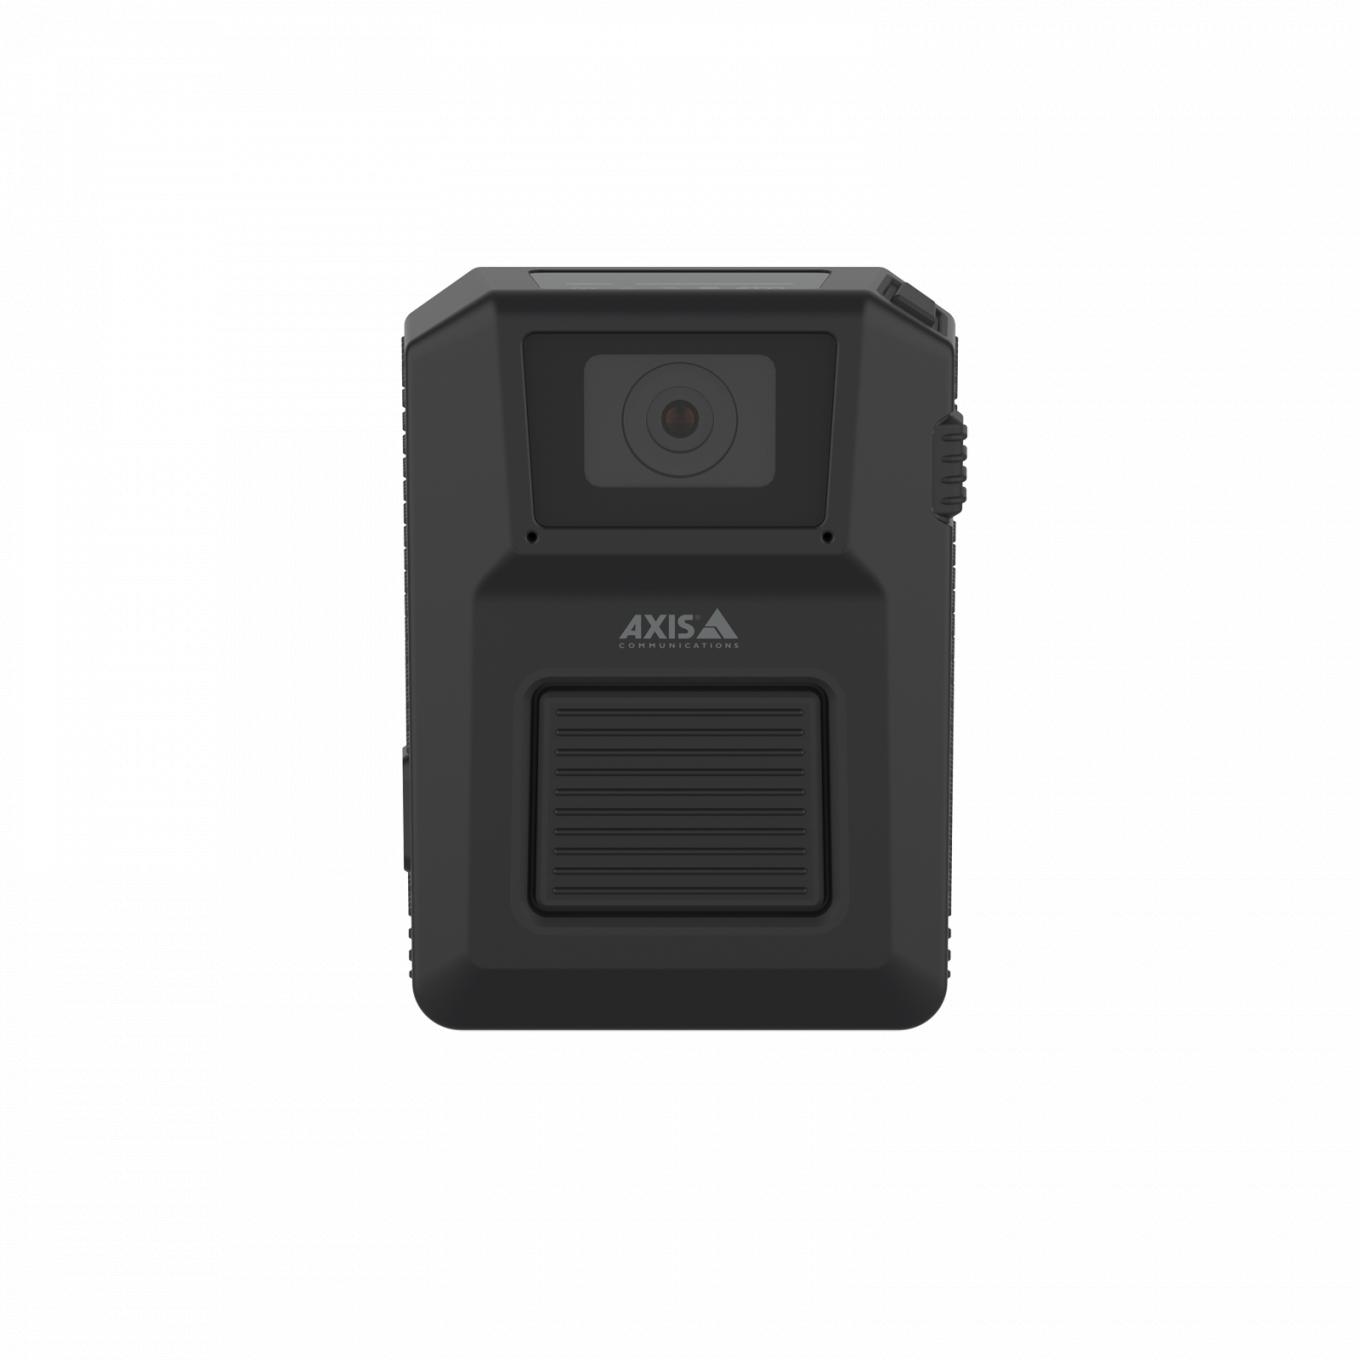 Нательная камера AXIS W101 Body Worn Camera черного цвета, вид спереди